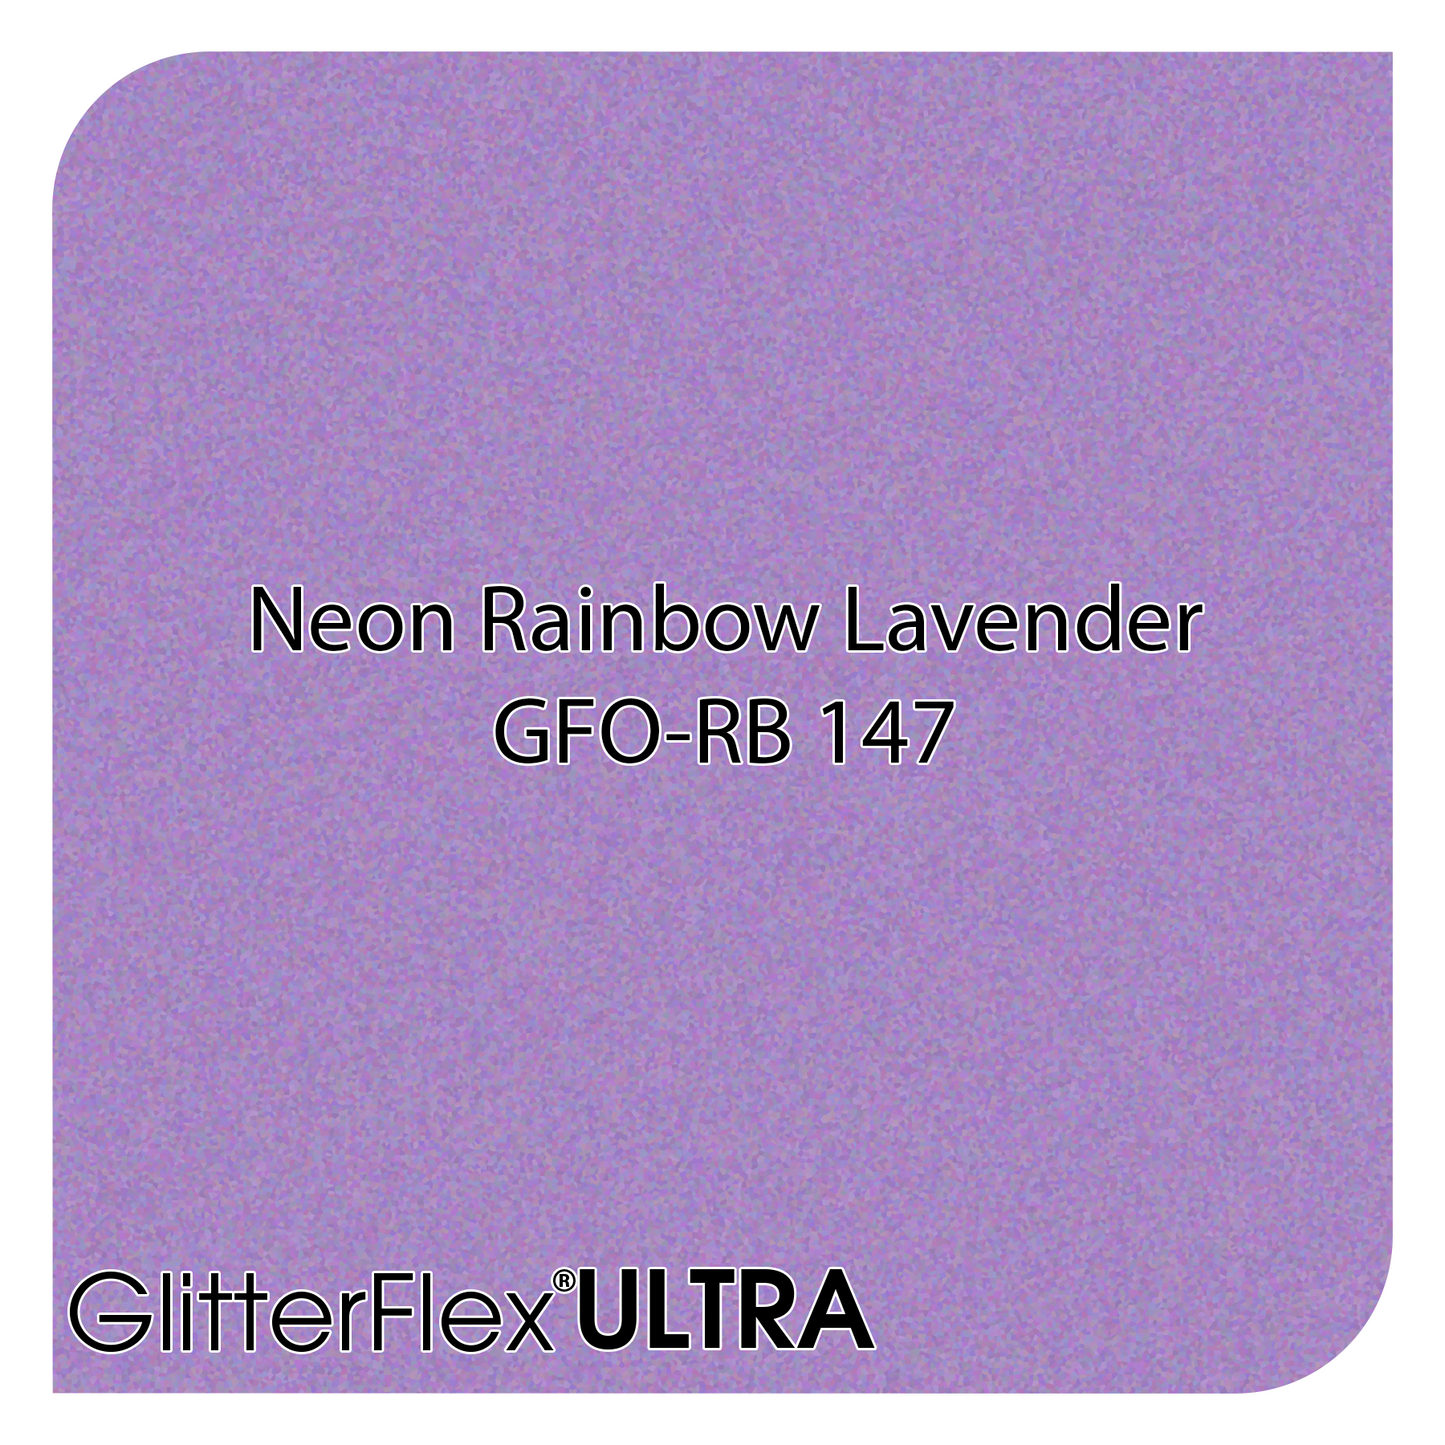 GLITTERFLEX® ULTRA NEON OPAQUES - 12" x 5 Yard (15 Feet)